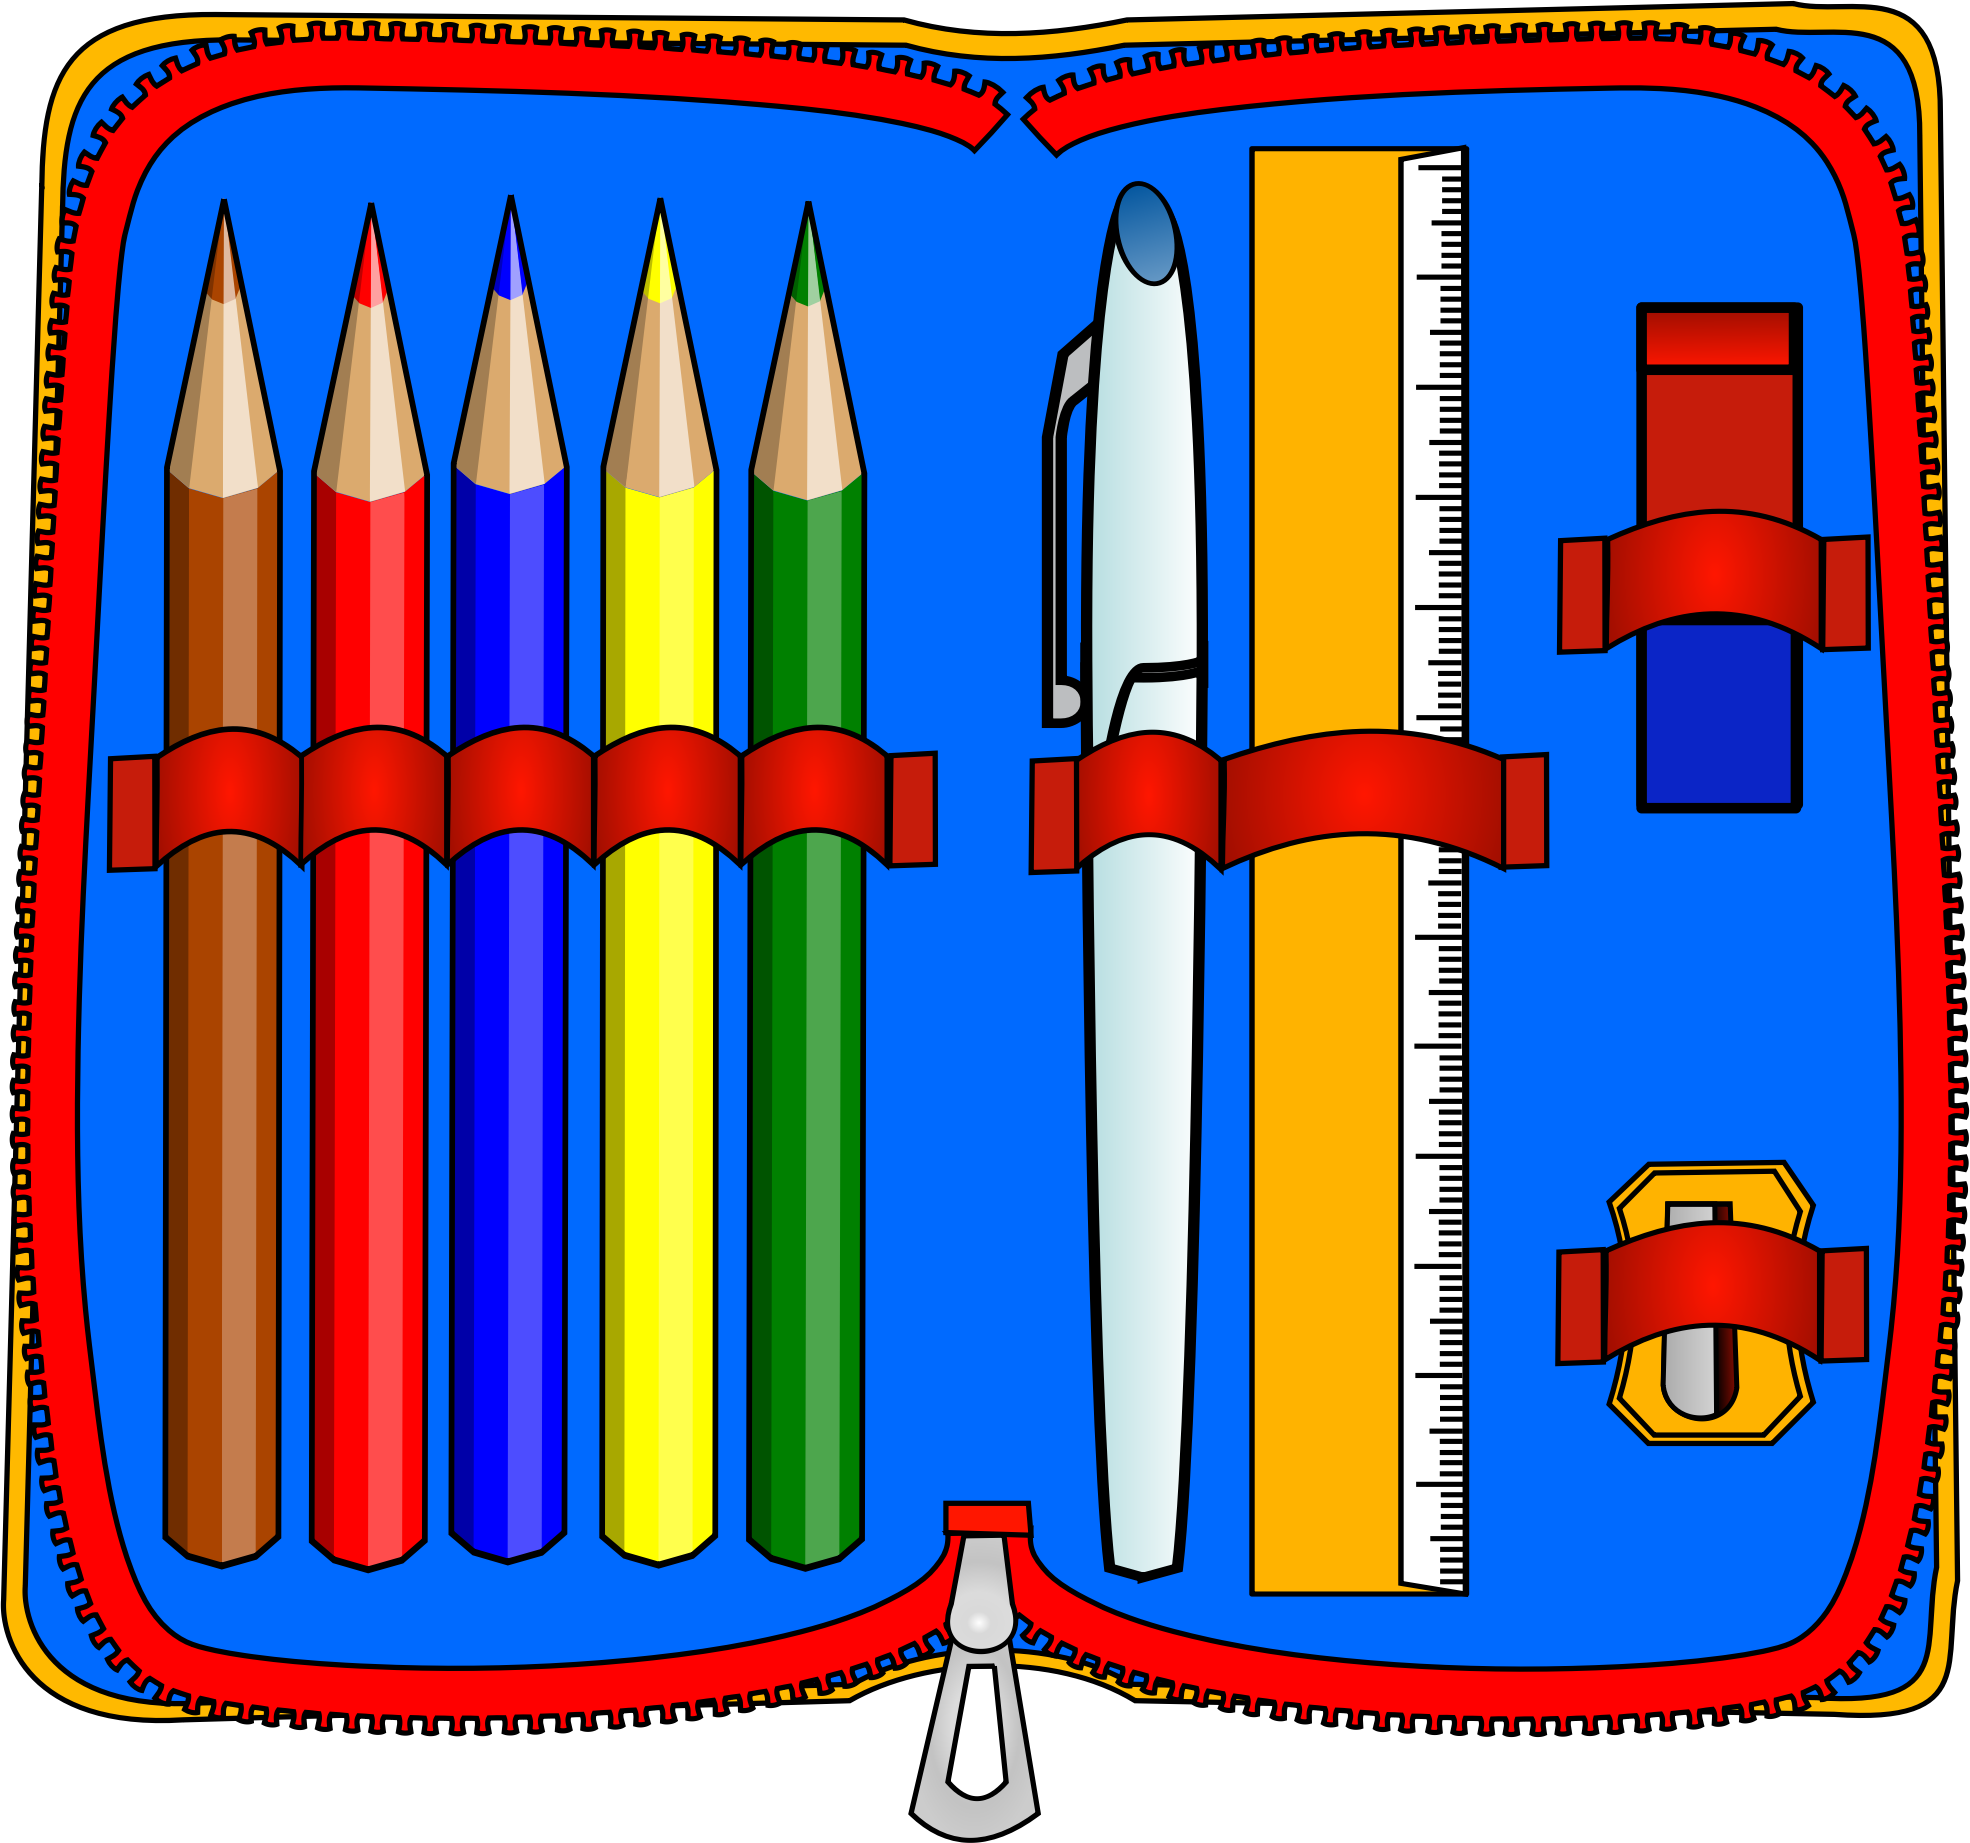 File:VocaDi-School,Pencilcase.jpeg - Wikimedia Commons